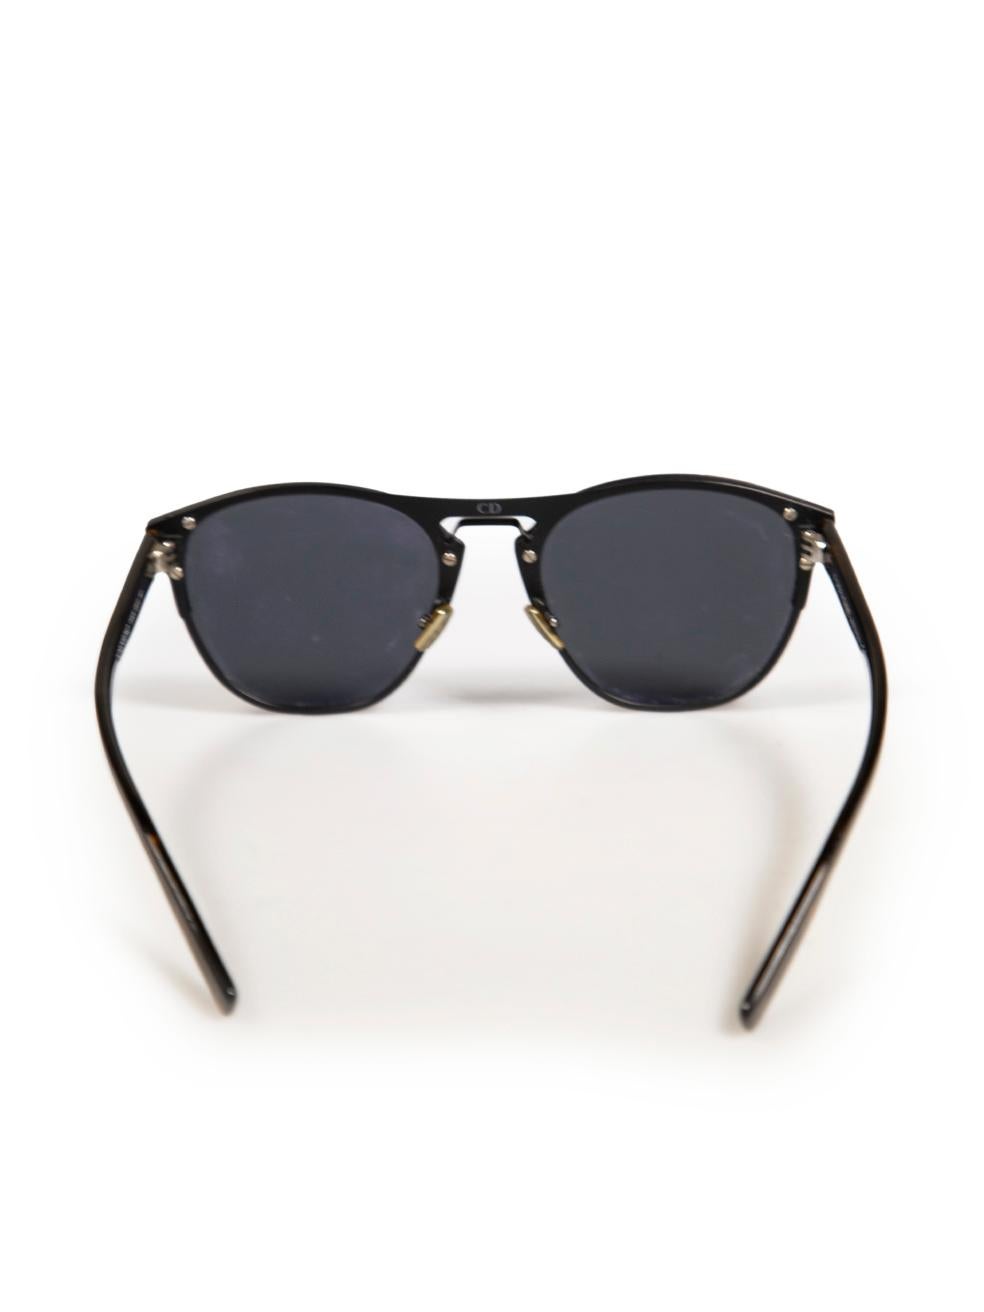 Dior Black Metal Diorchrono Sunglasses In Excellent Condition In London, GB